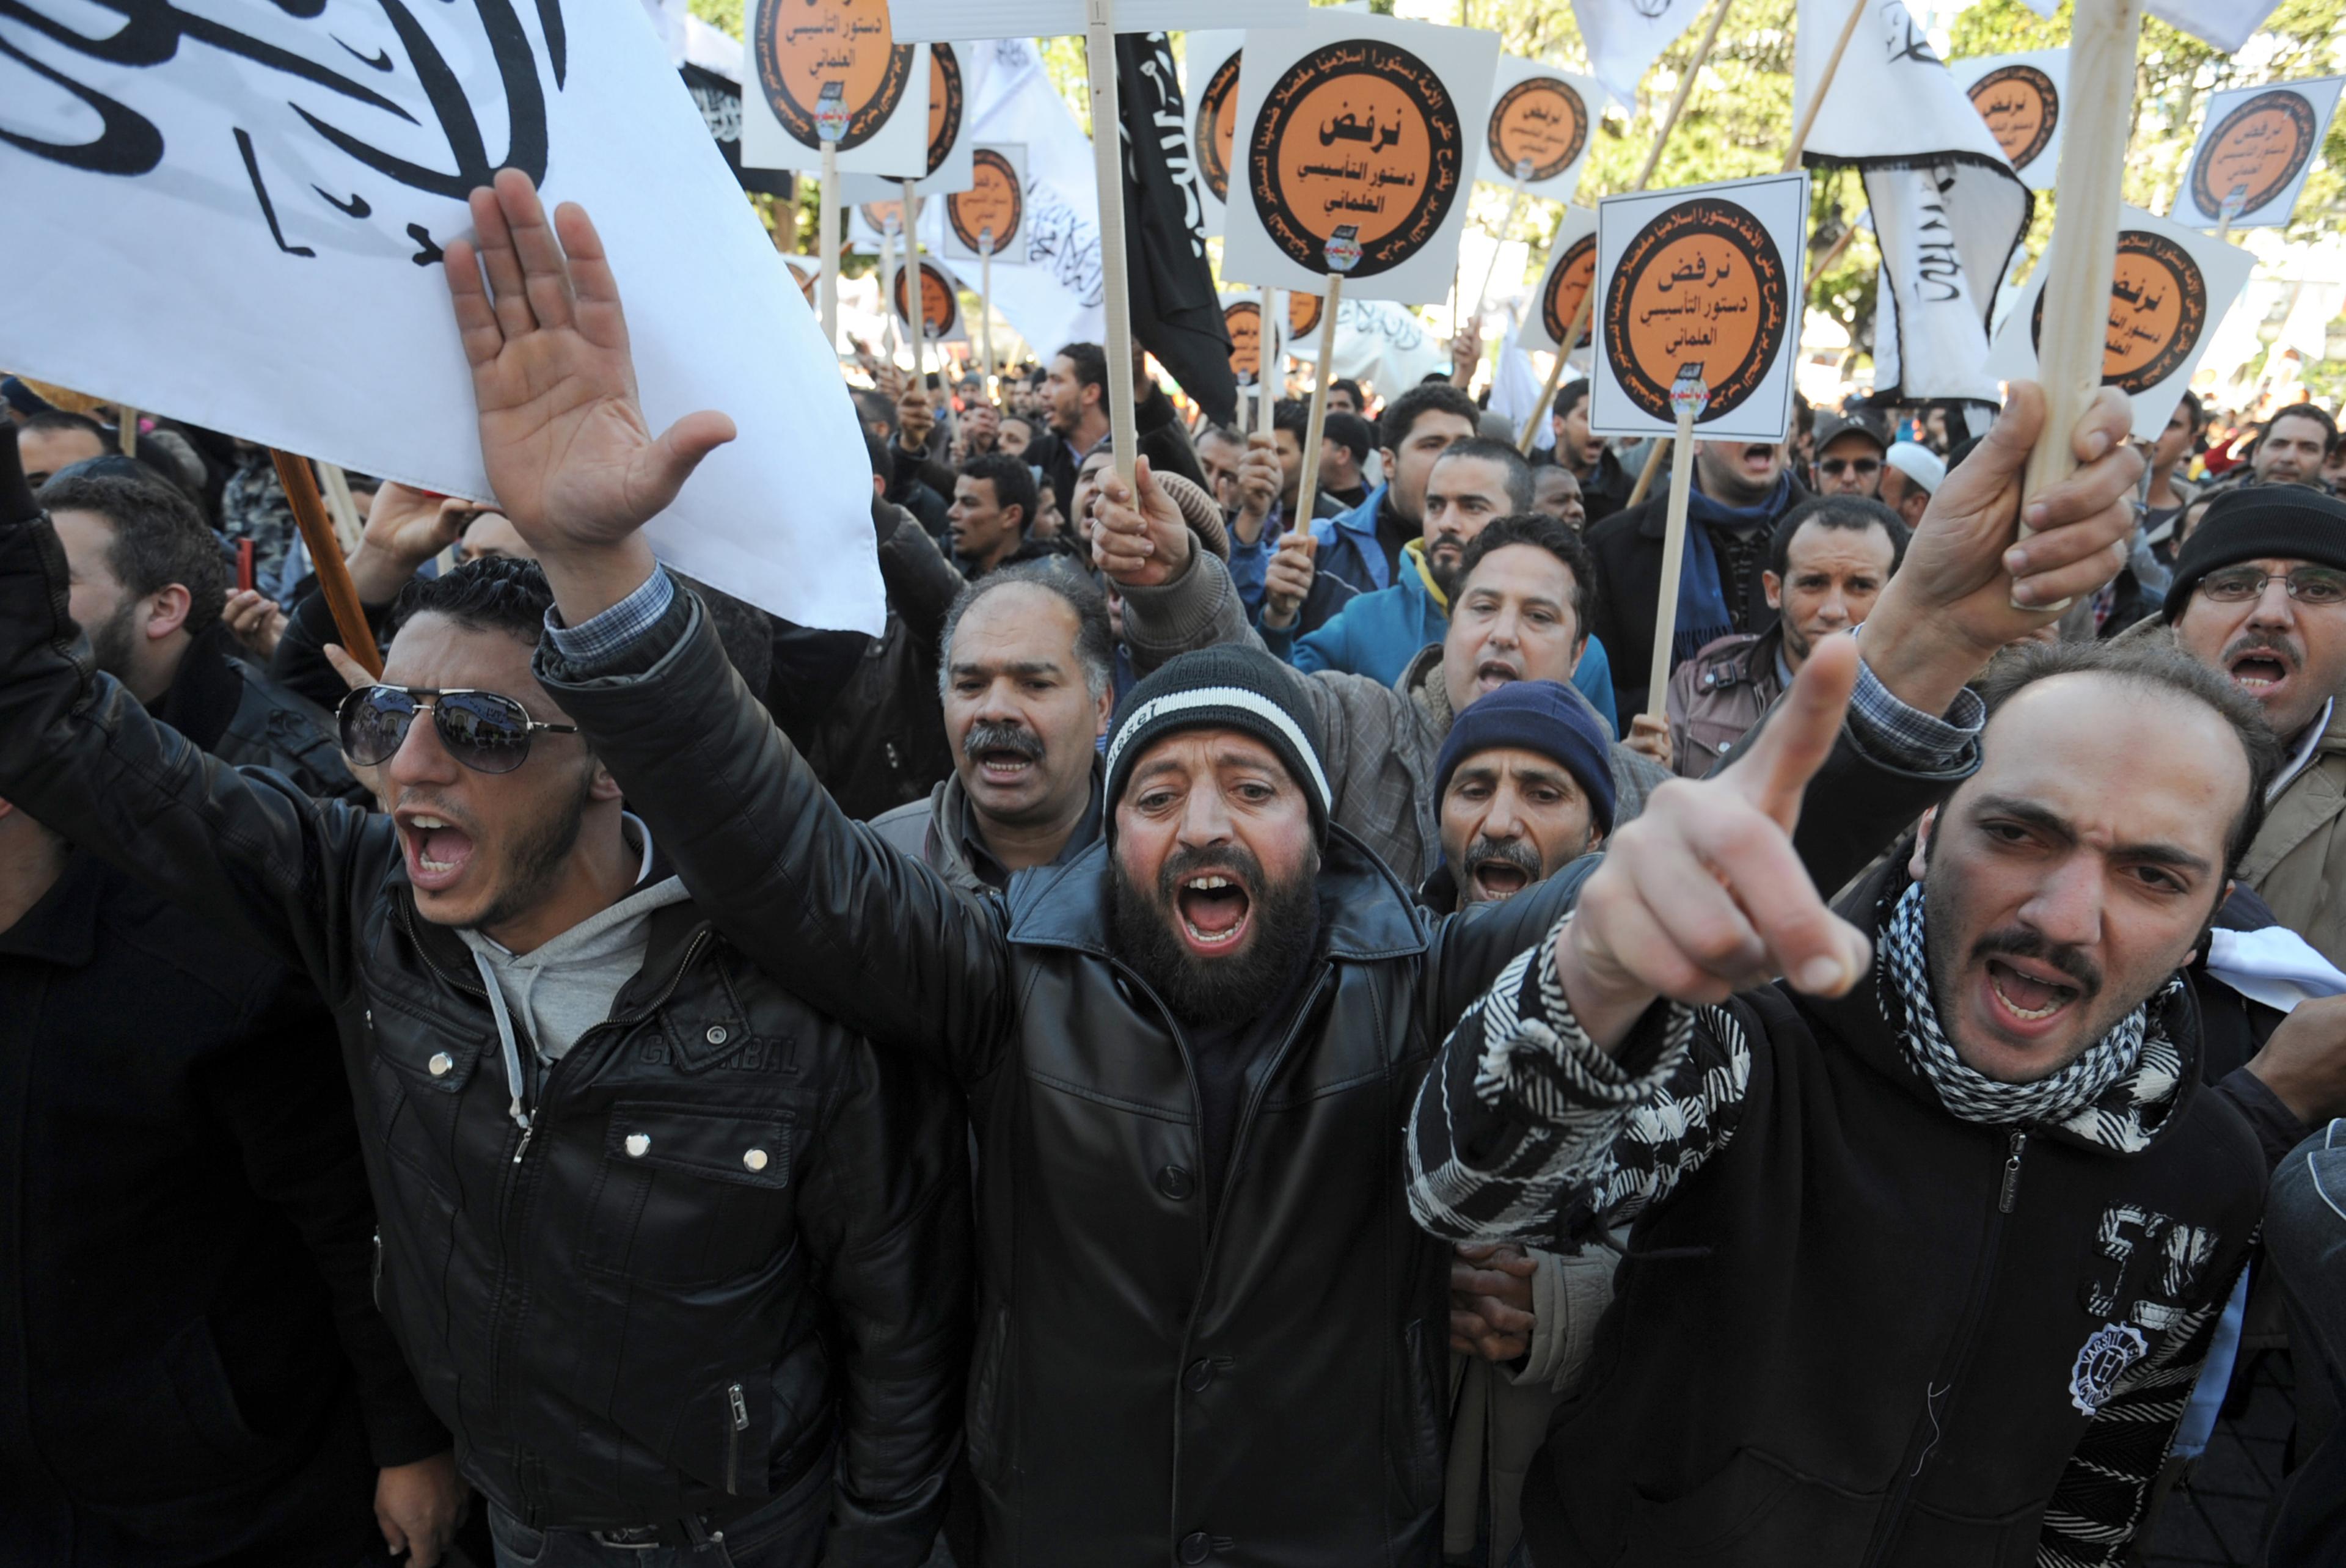 En demonstration i Tunisiens huvudstad Tunis 2014, som Hizb ut-Tahrir arrangerade. Demonstranterna ropar slogans mot den ett lagförslag som de ansåg vara sekulärt. (Foto: Fethi Belaid/AFP/Getty Images)